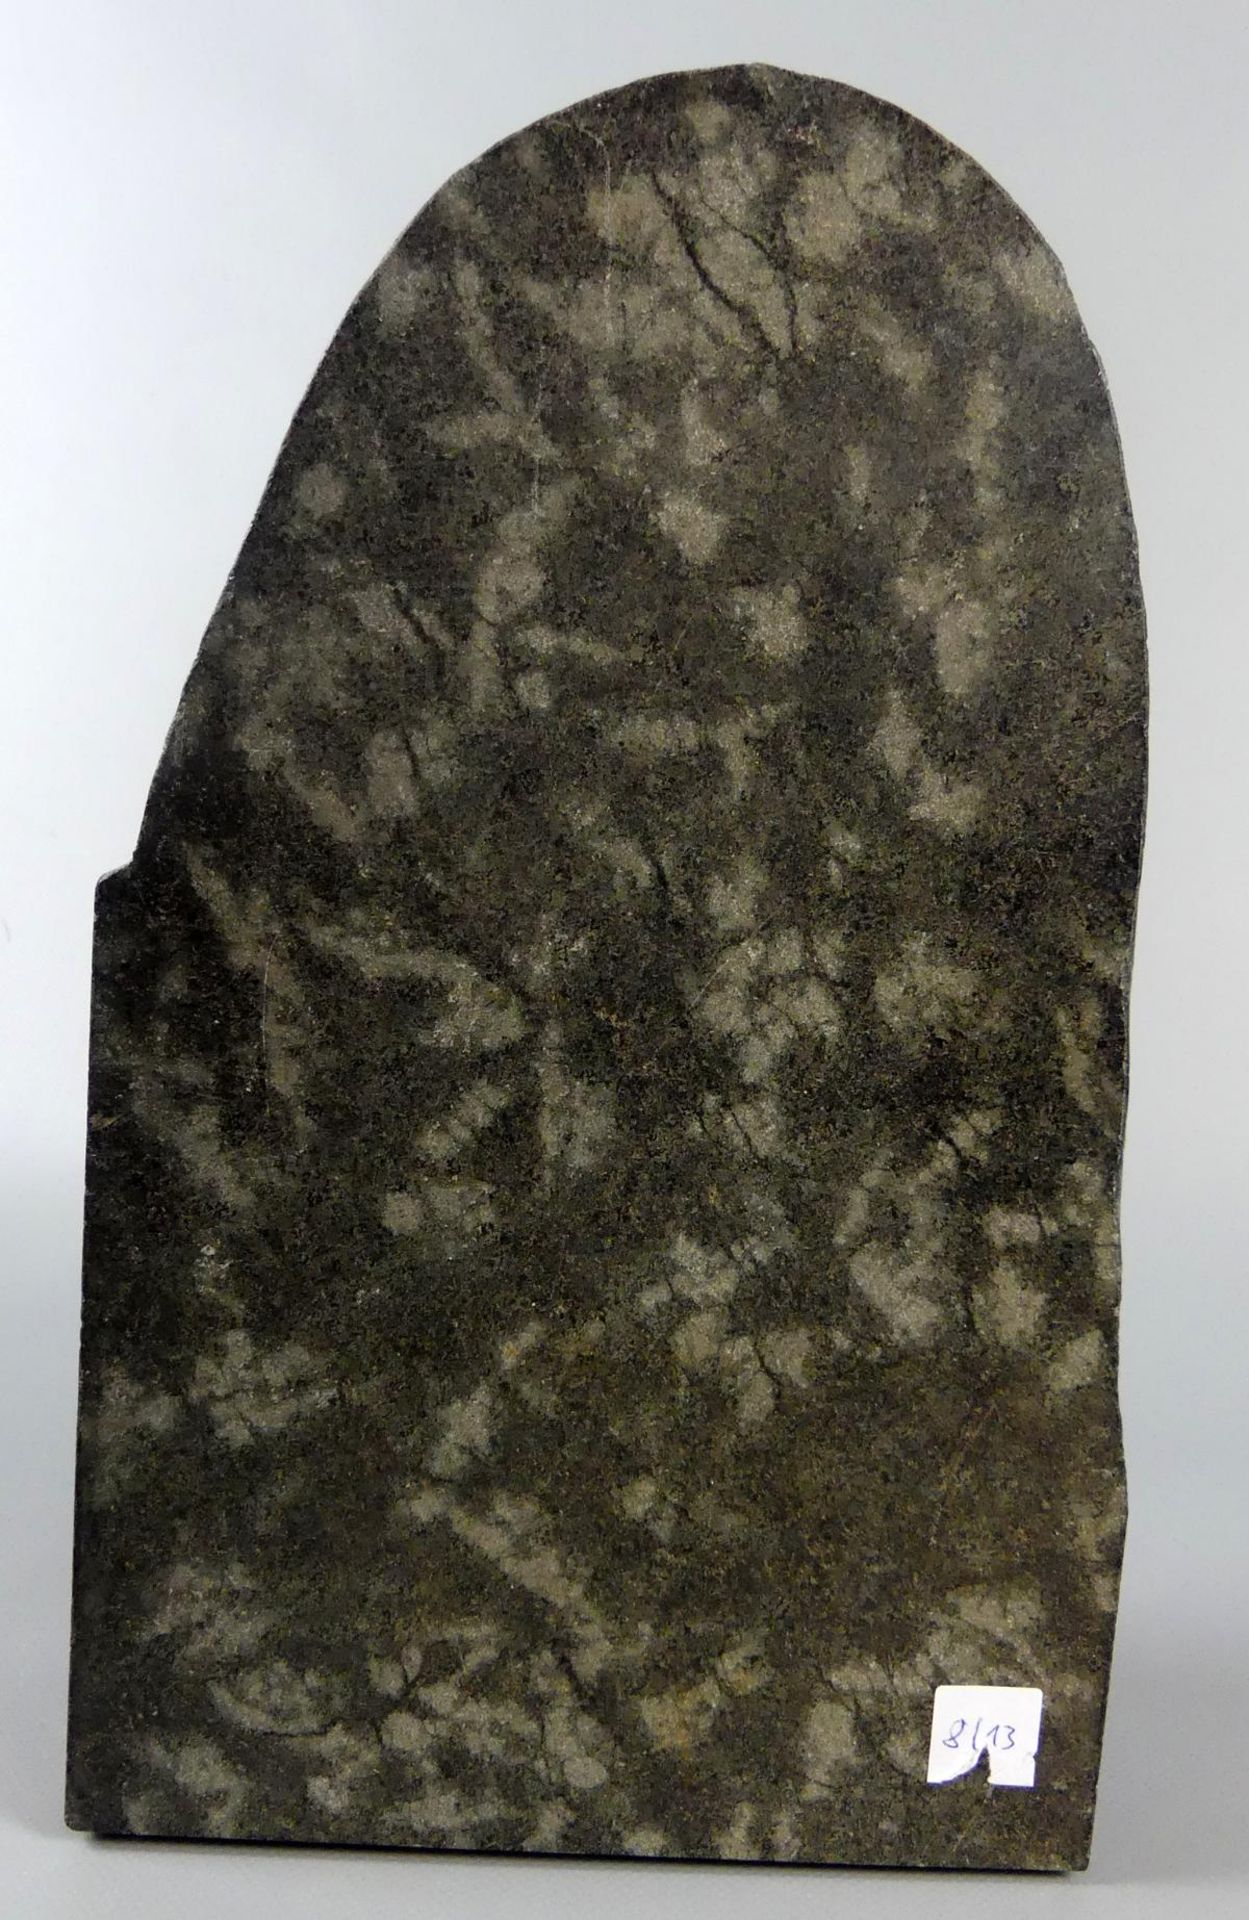 Skulptur, "Betende", unten monogr. HJK?, dat. 12.88, schwarzer Marmor, - Bild 3 aus 5